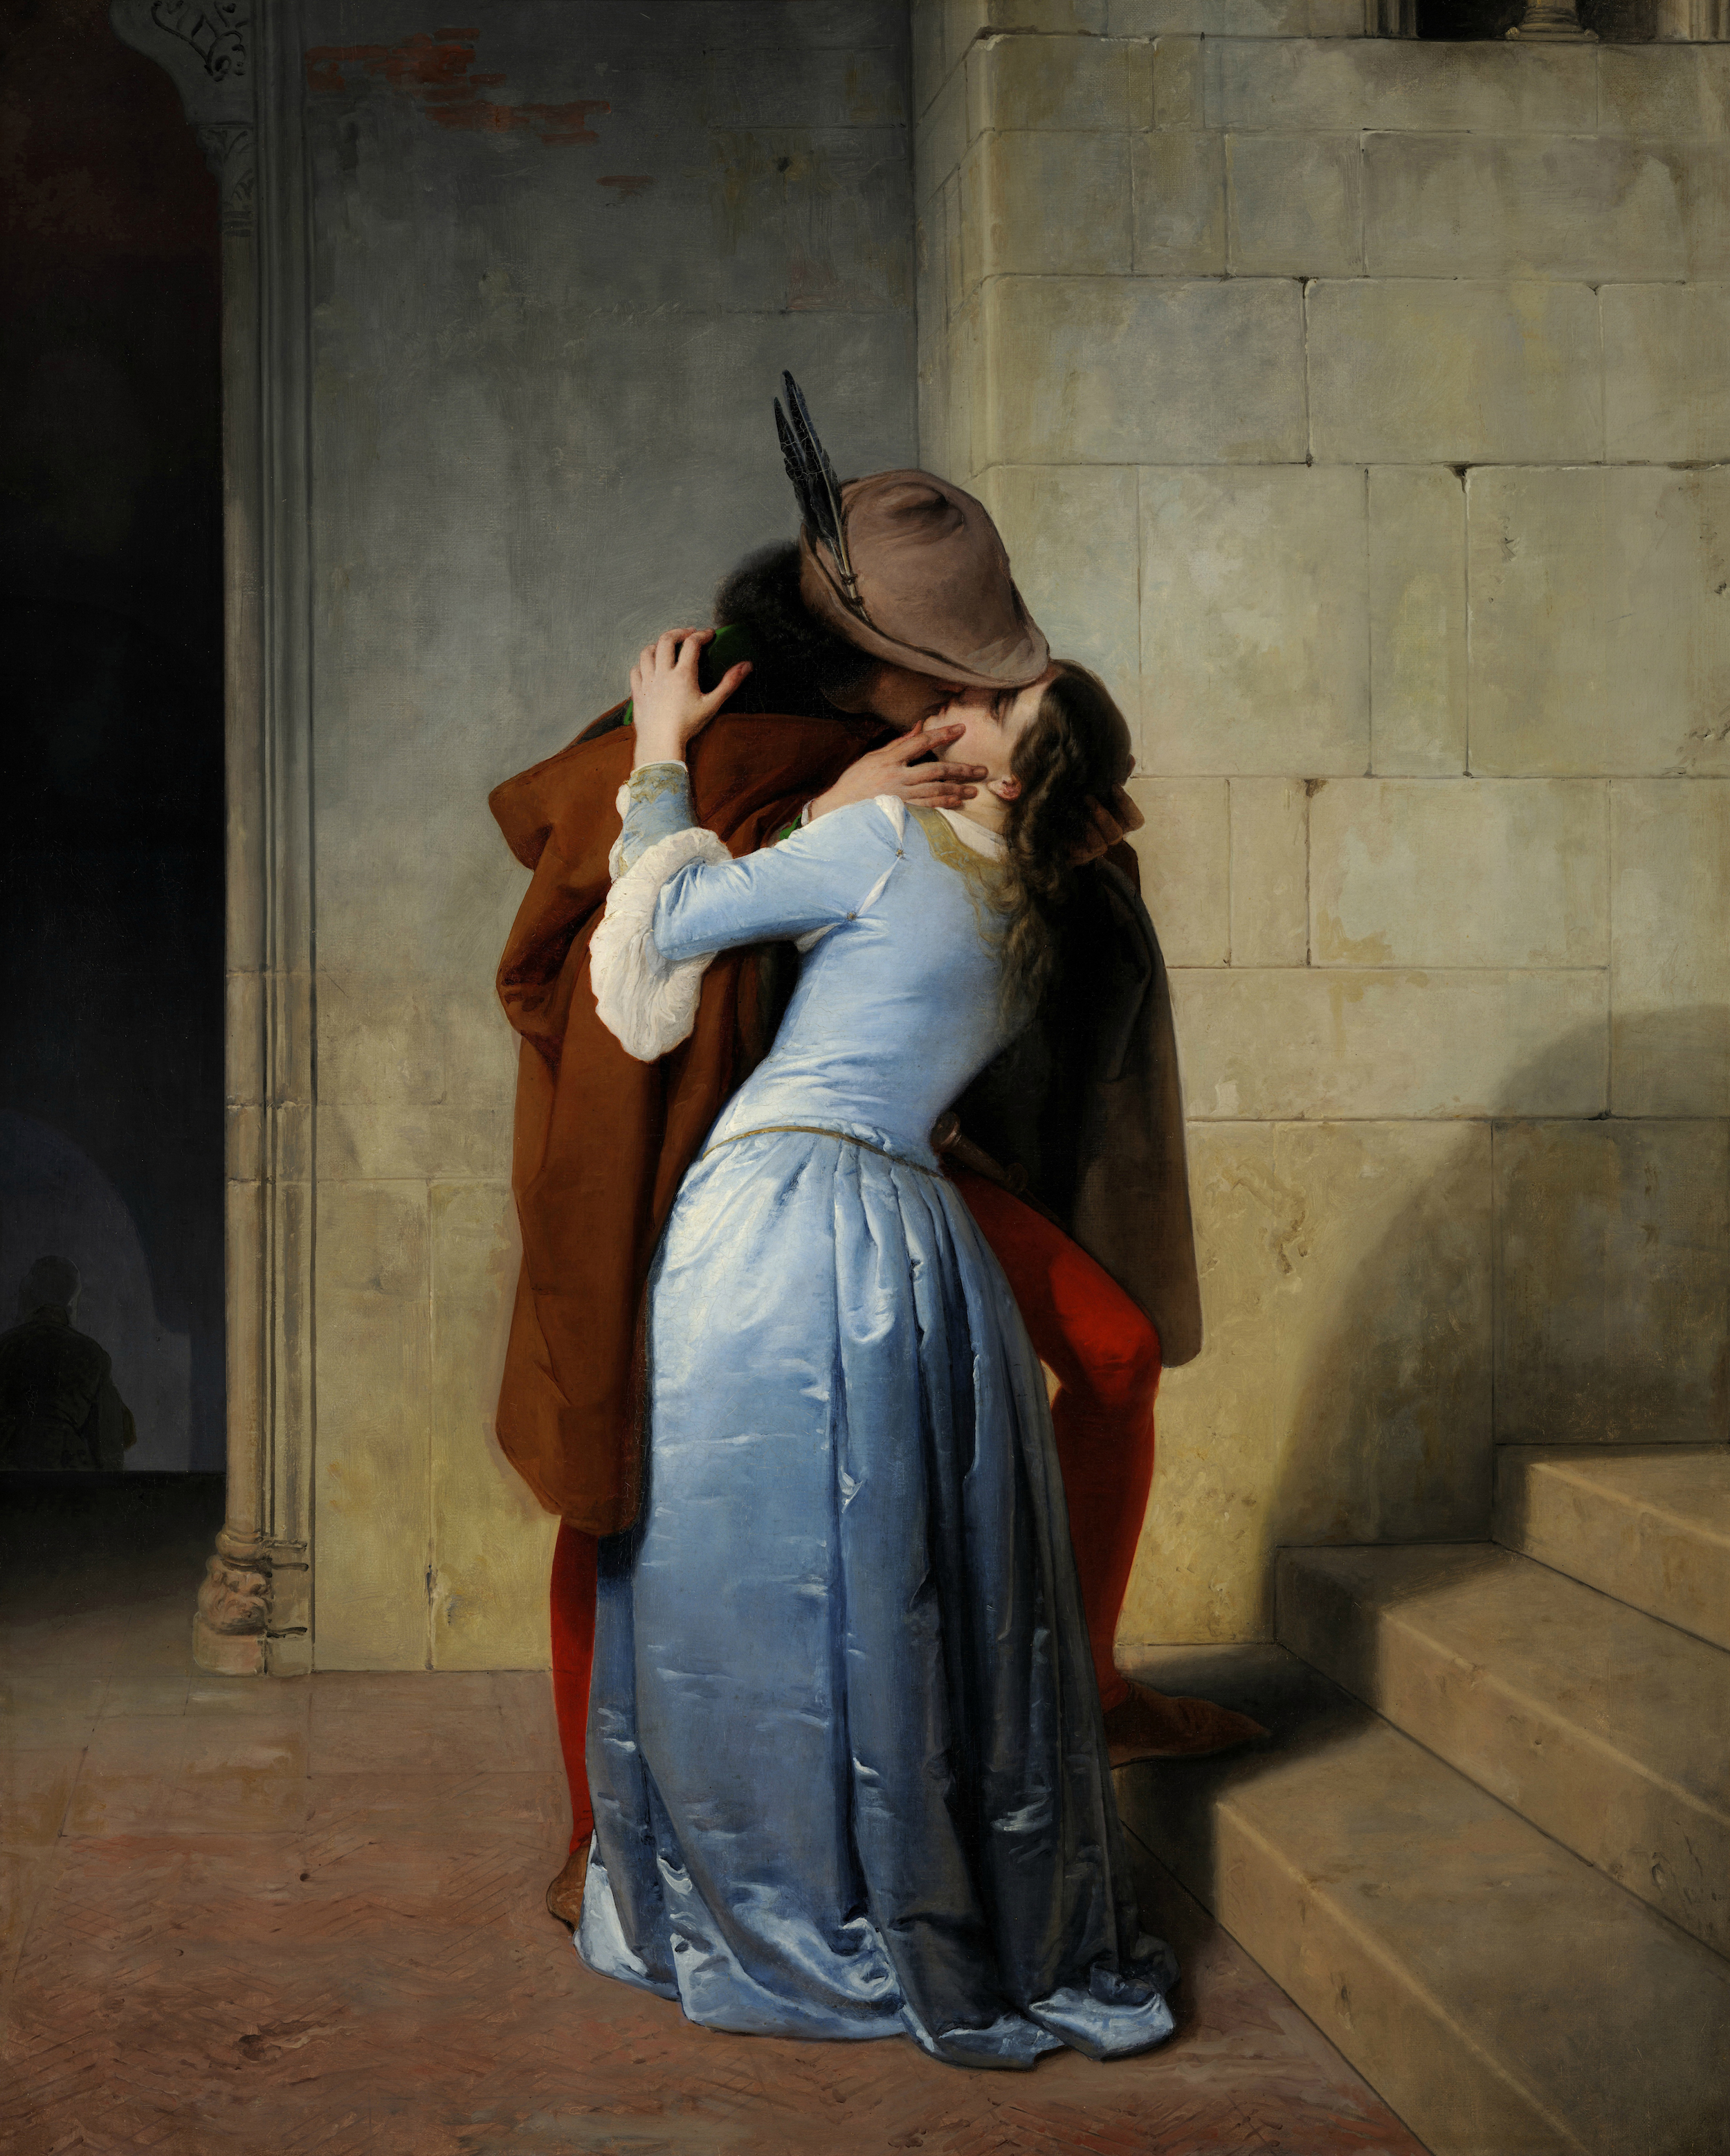 القبلة by Francesco Hayez - ١٨٥٩م - ١١٠سم×٨٨سم 